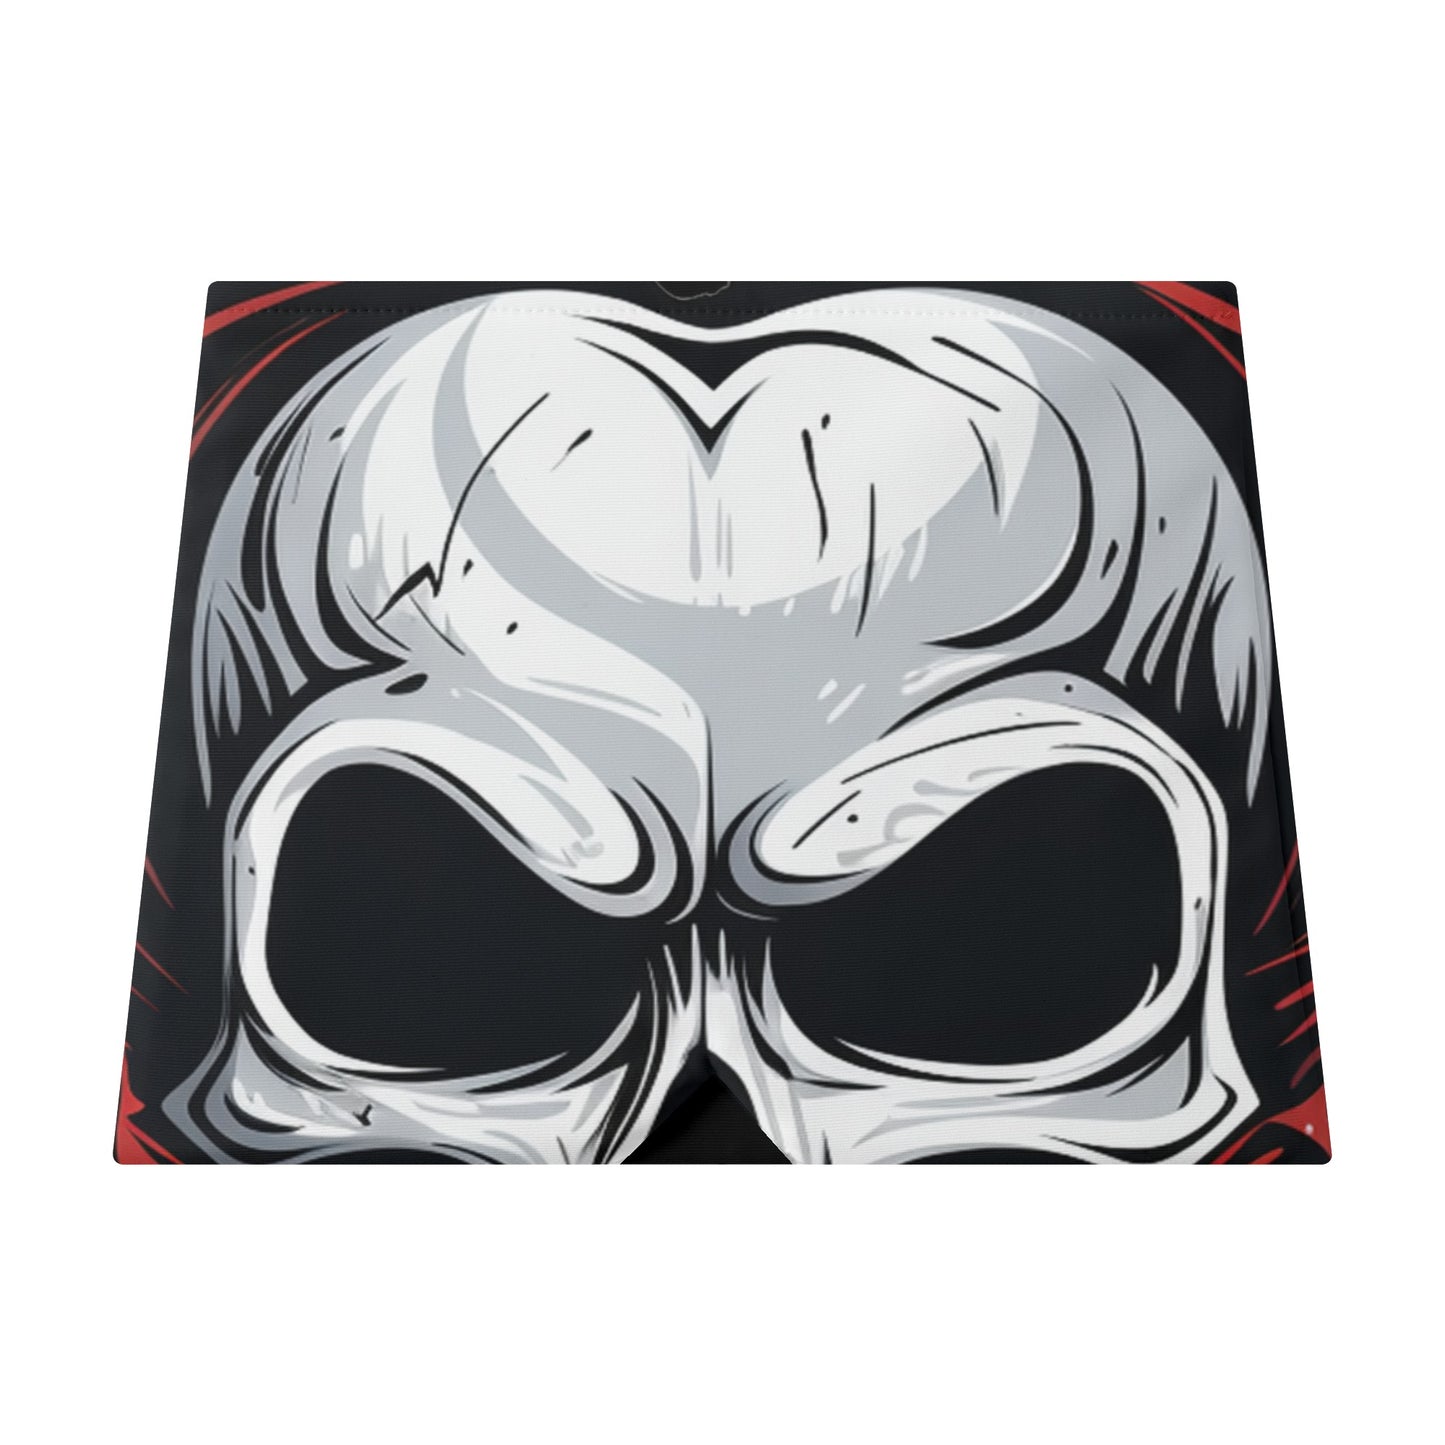 Neduz Designs Dark Lore Collection - Skull Eyes Ice Head Wrap